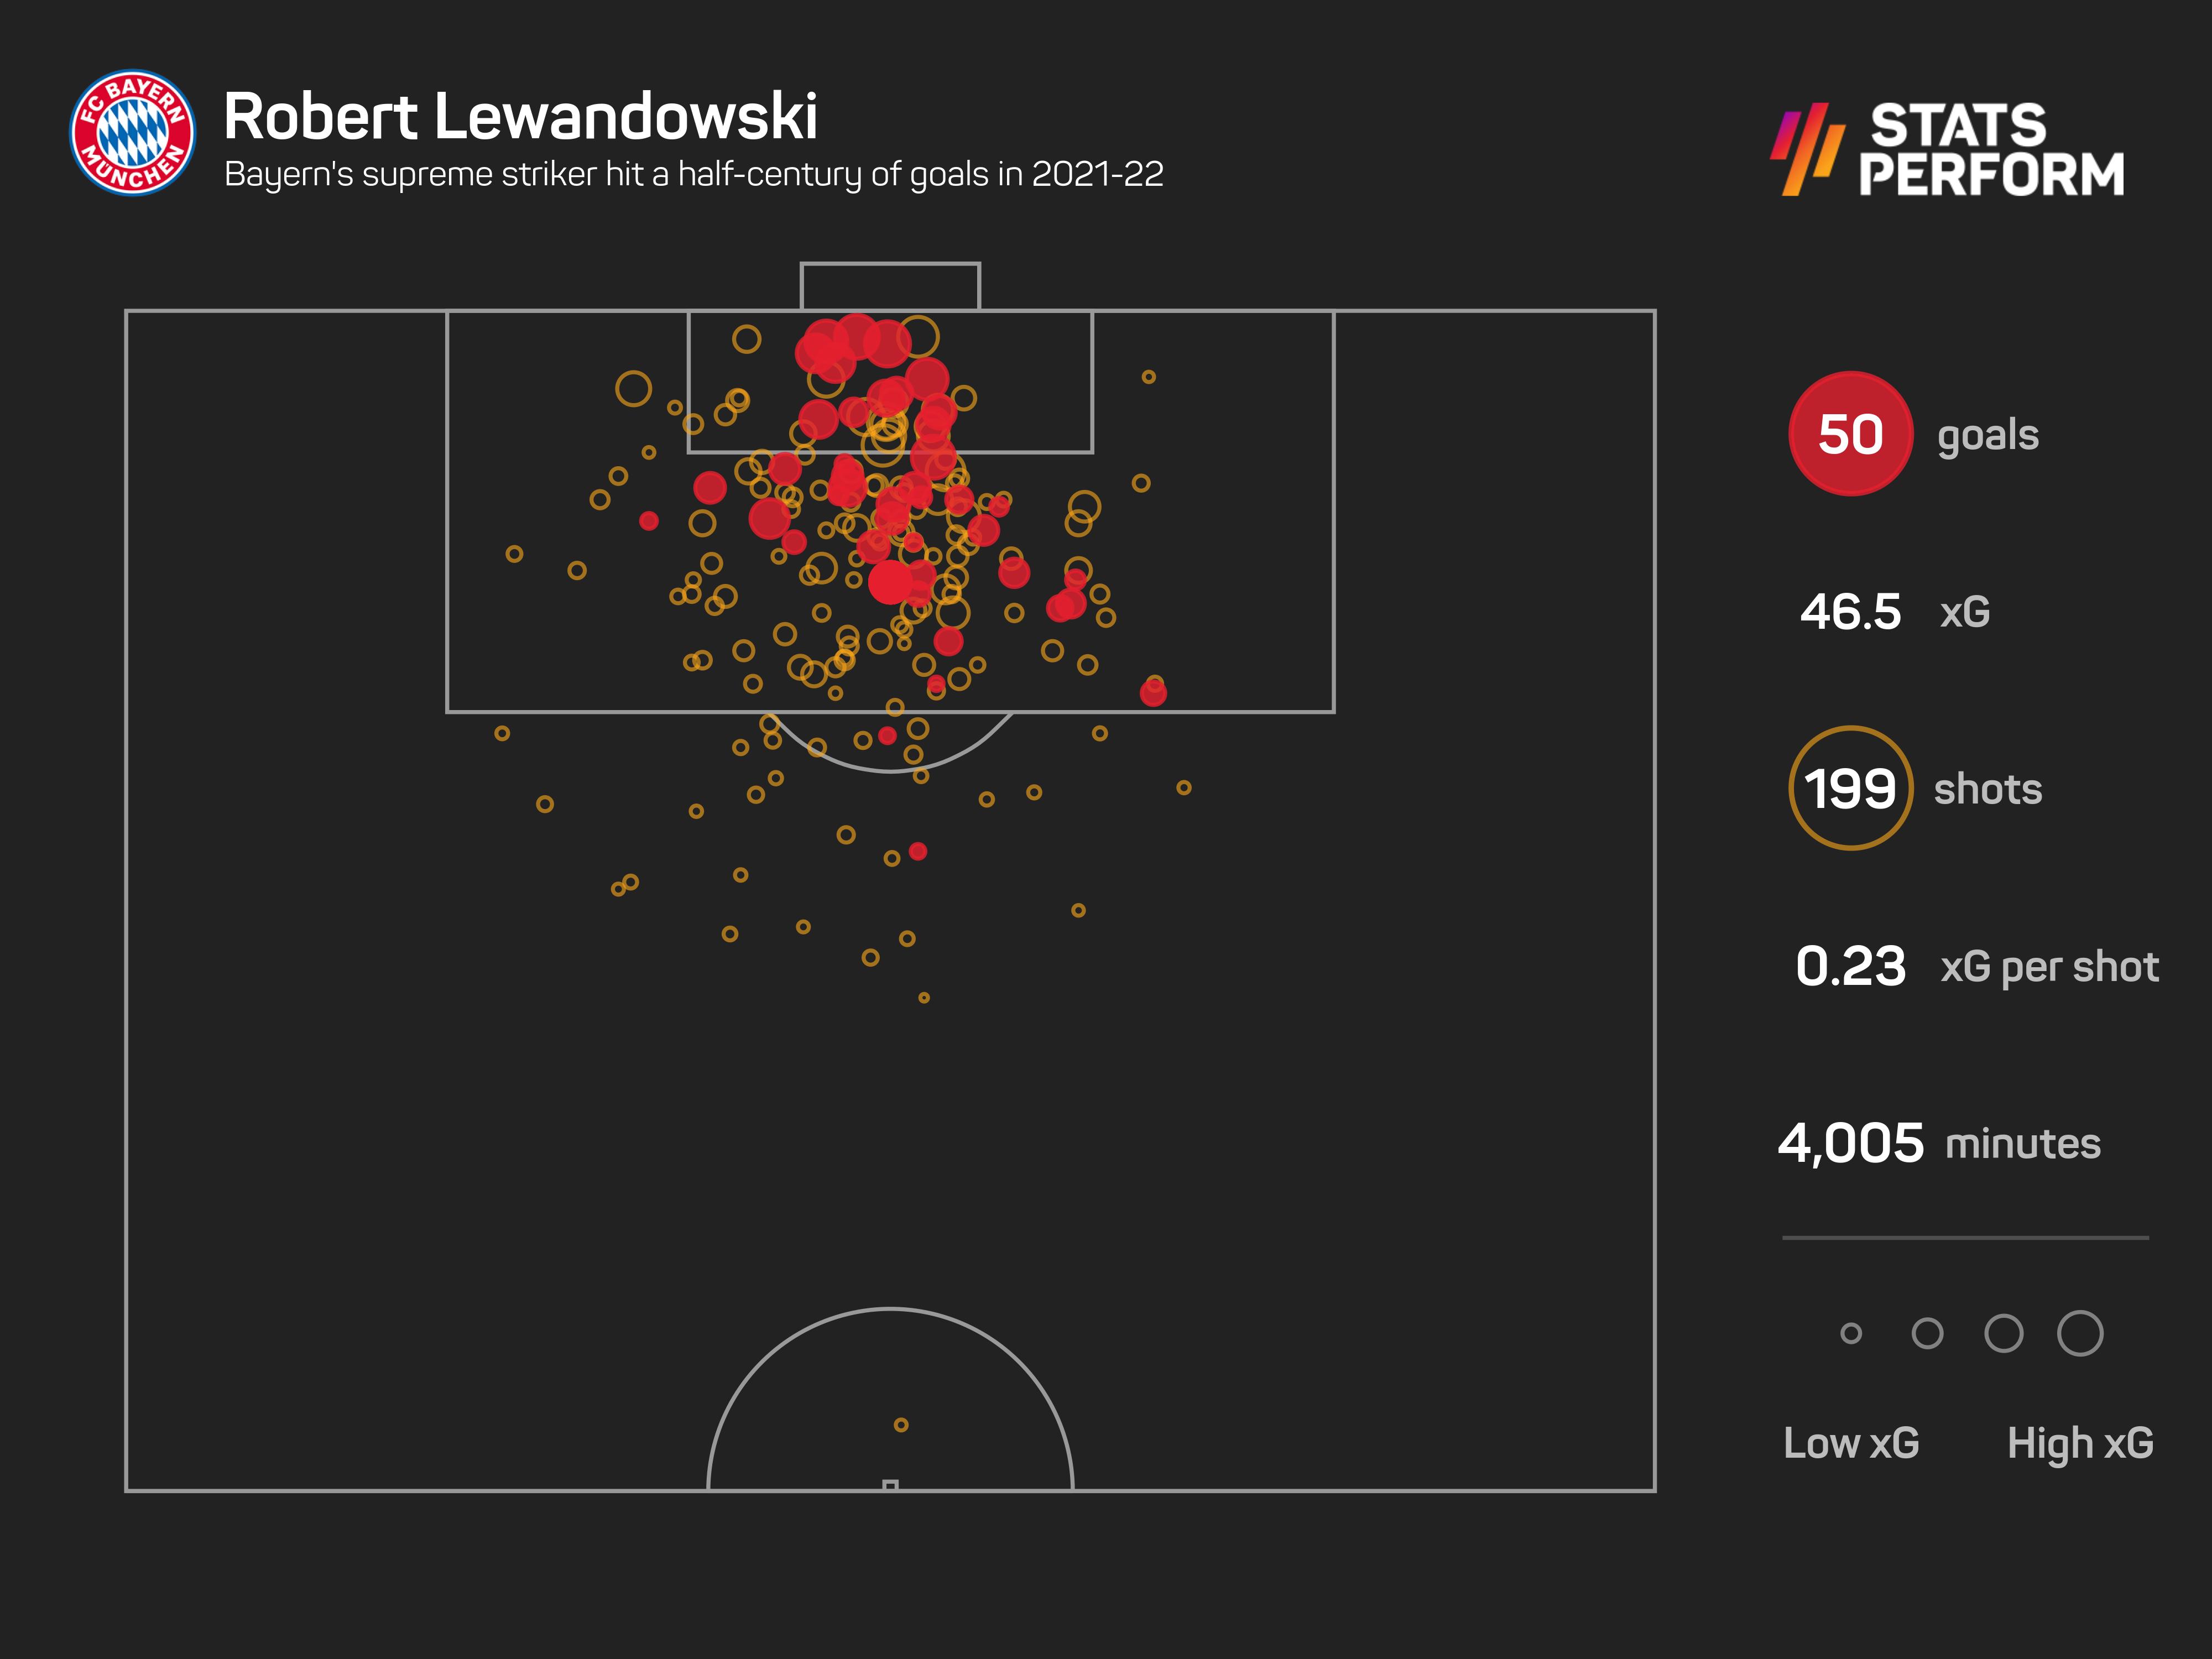 Robert Lewandowski scored 50 goals in the 2021-22 season